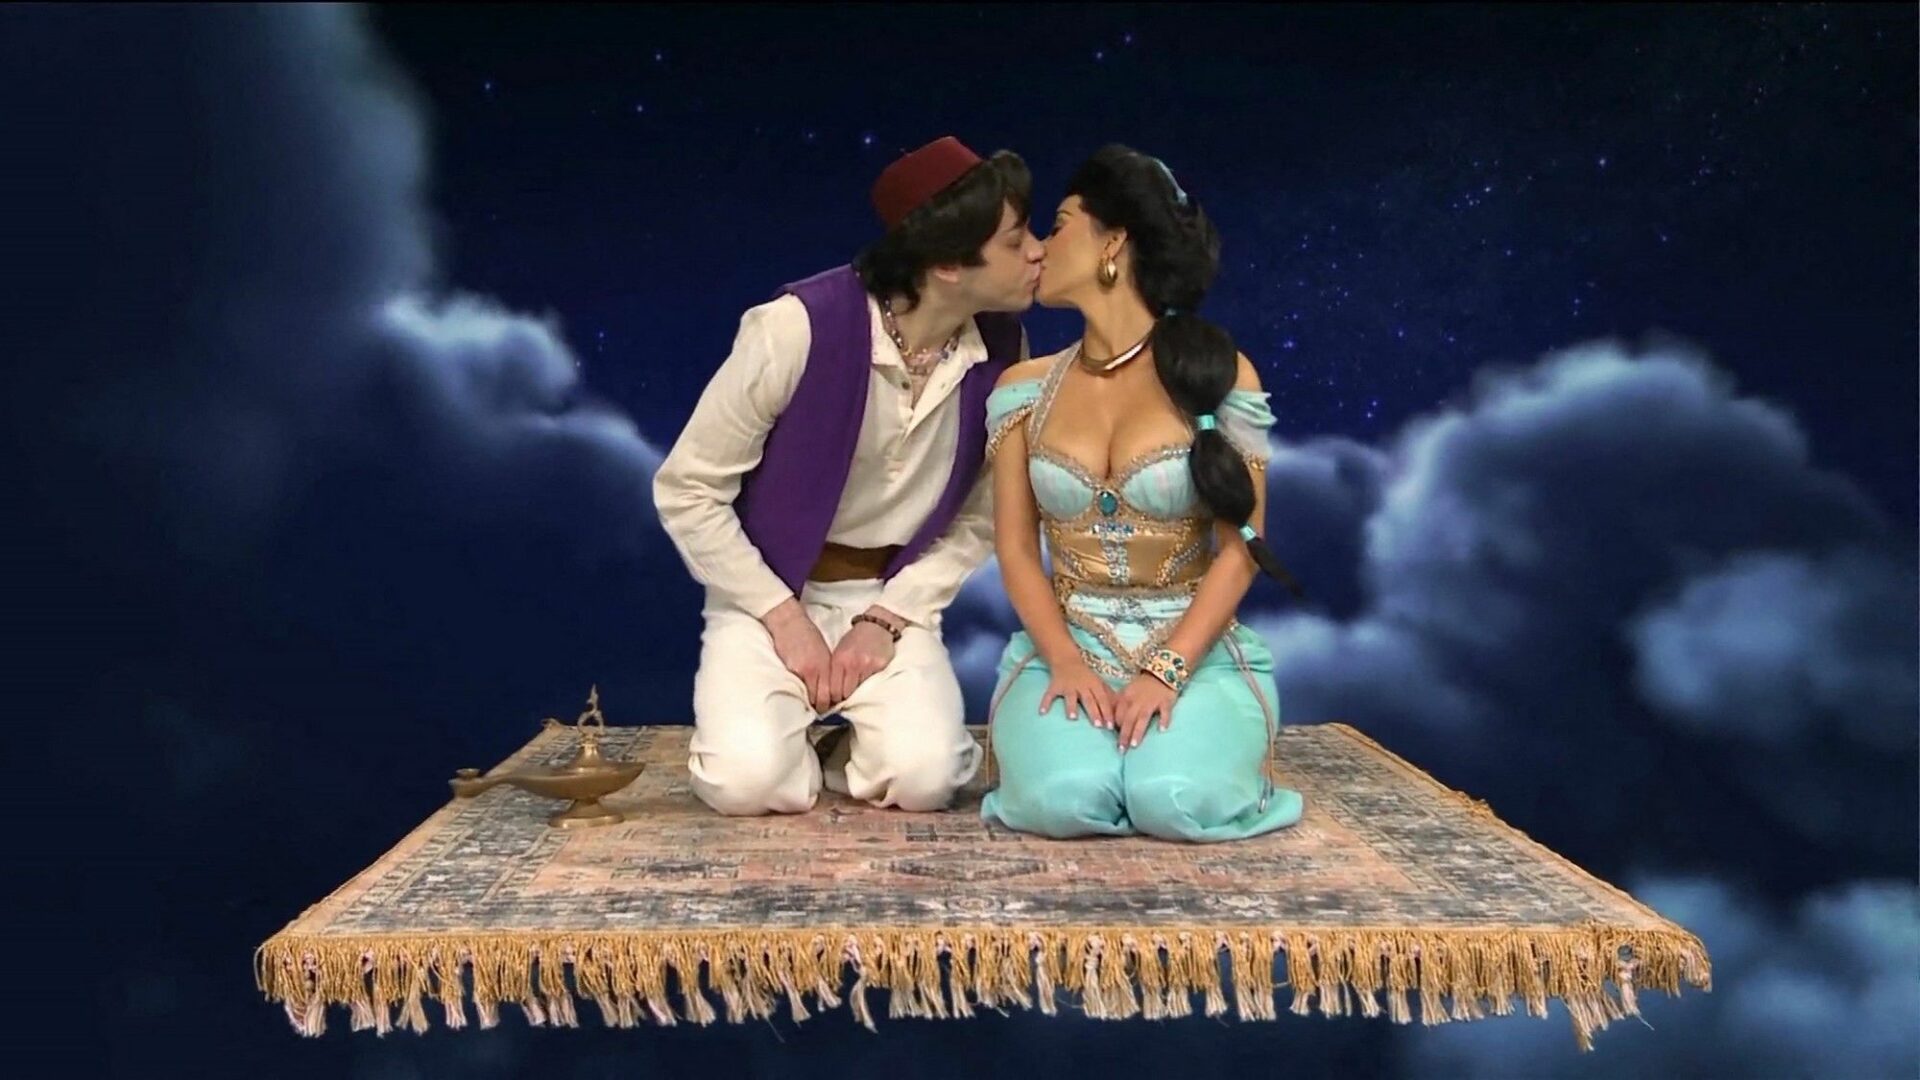  Pete Davidson et Kim Kardashian partagent un baiser lors d'un sketch @ Saturday Night Live